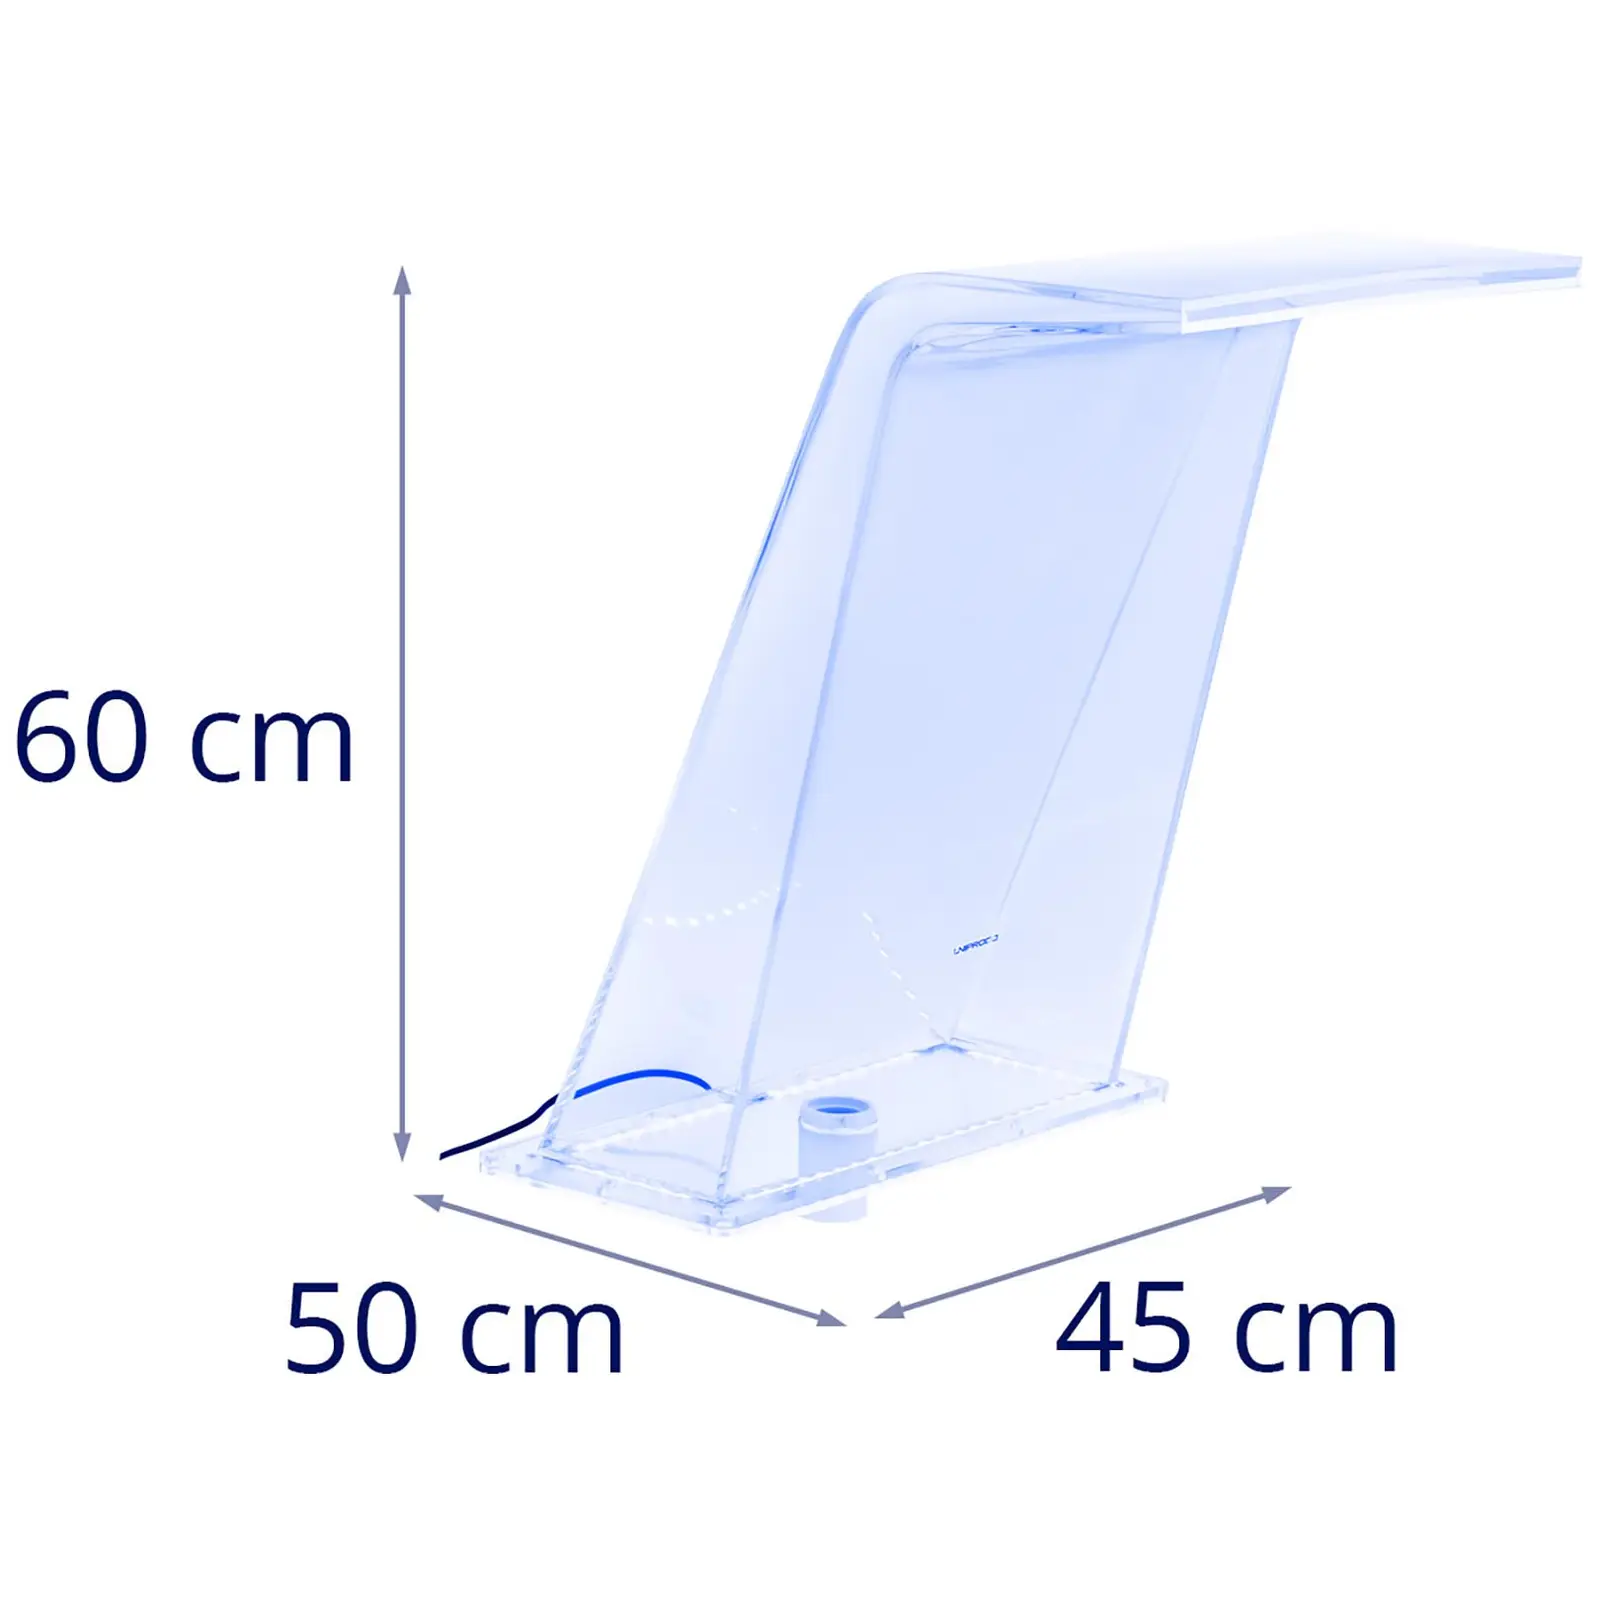 Staigus dušas - 45 cm - LED apšvietimas - Mėlyna / balta